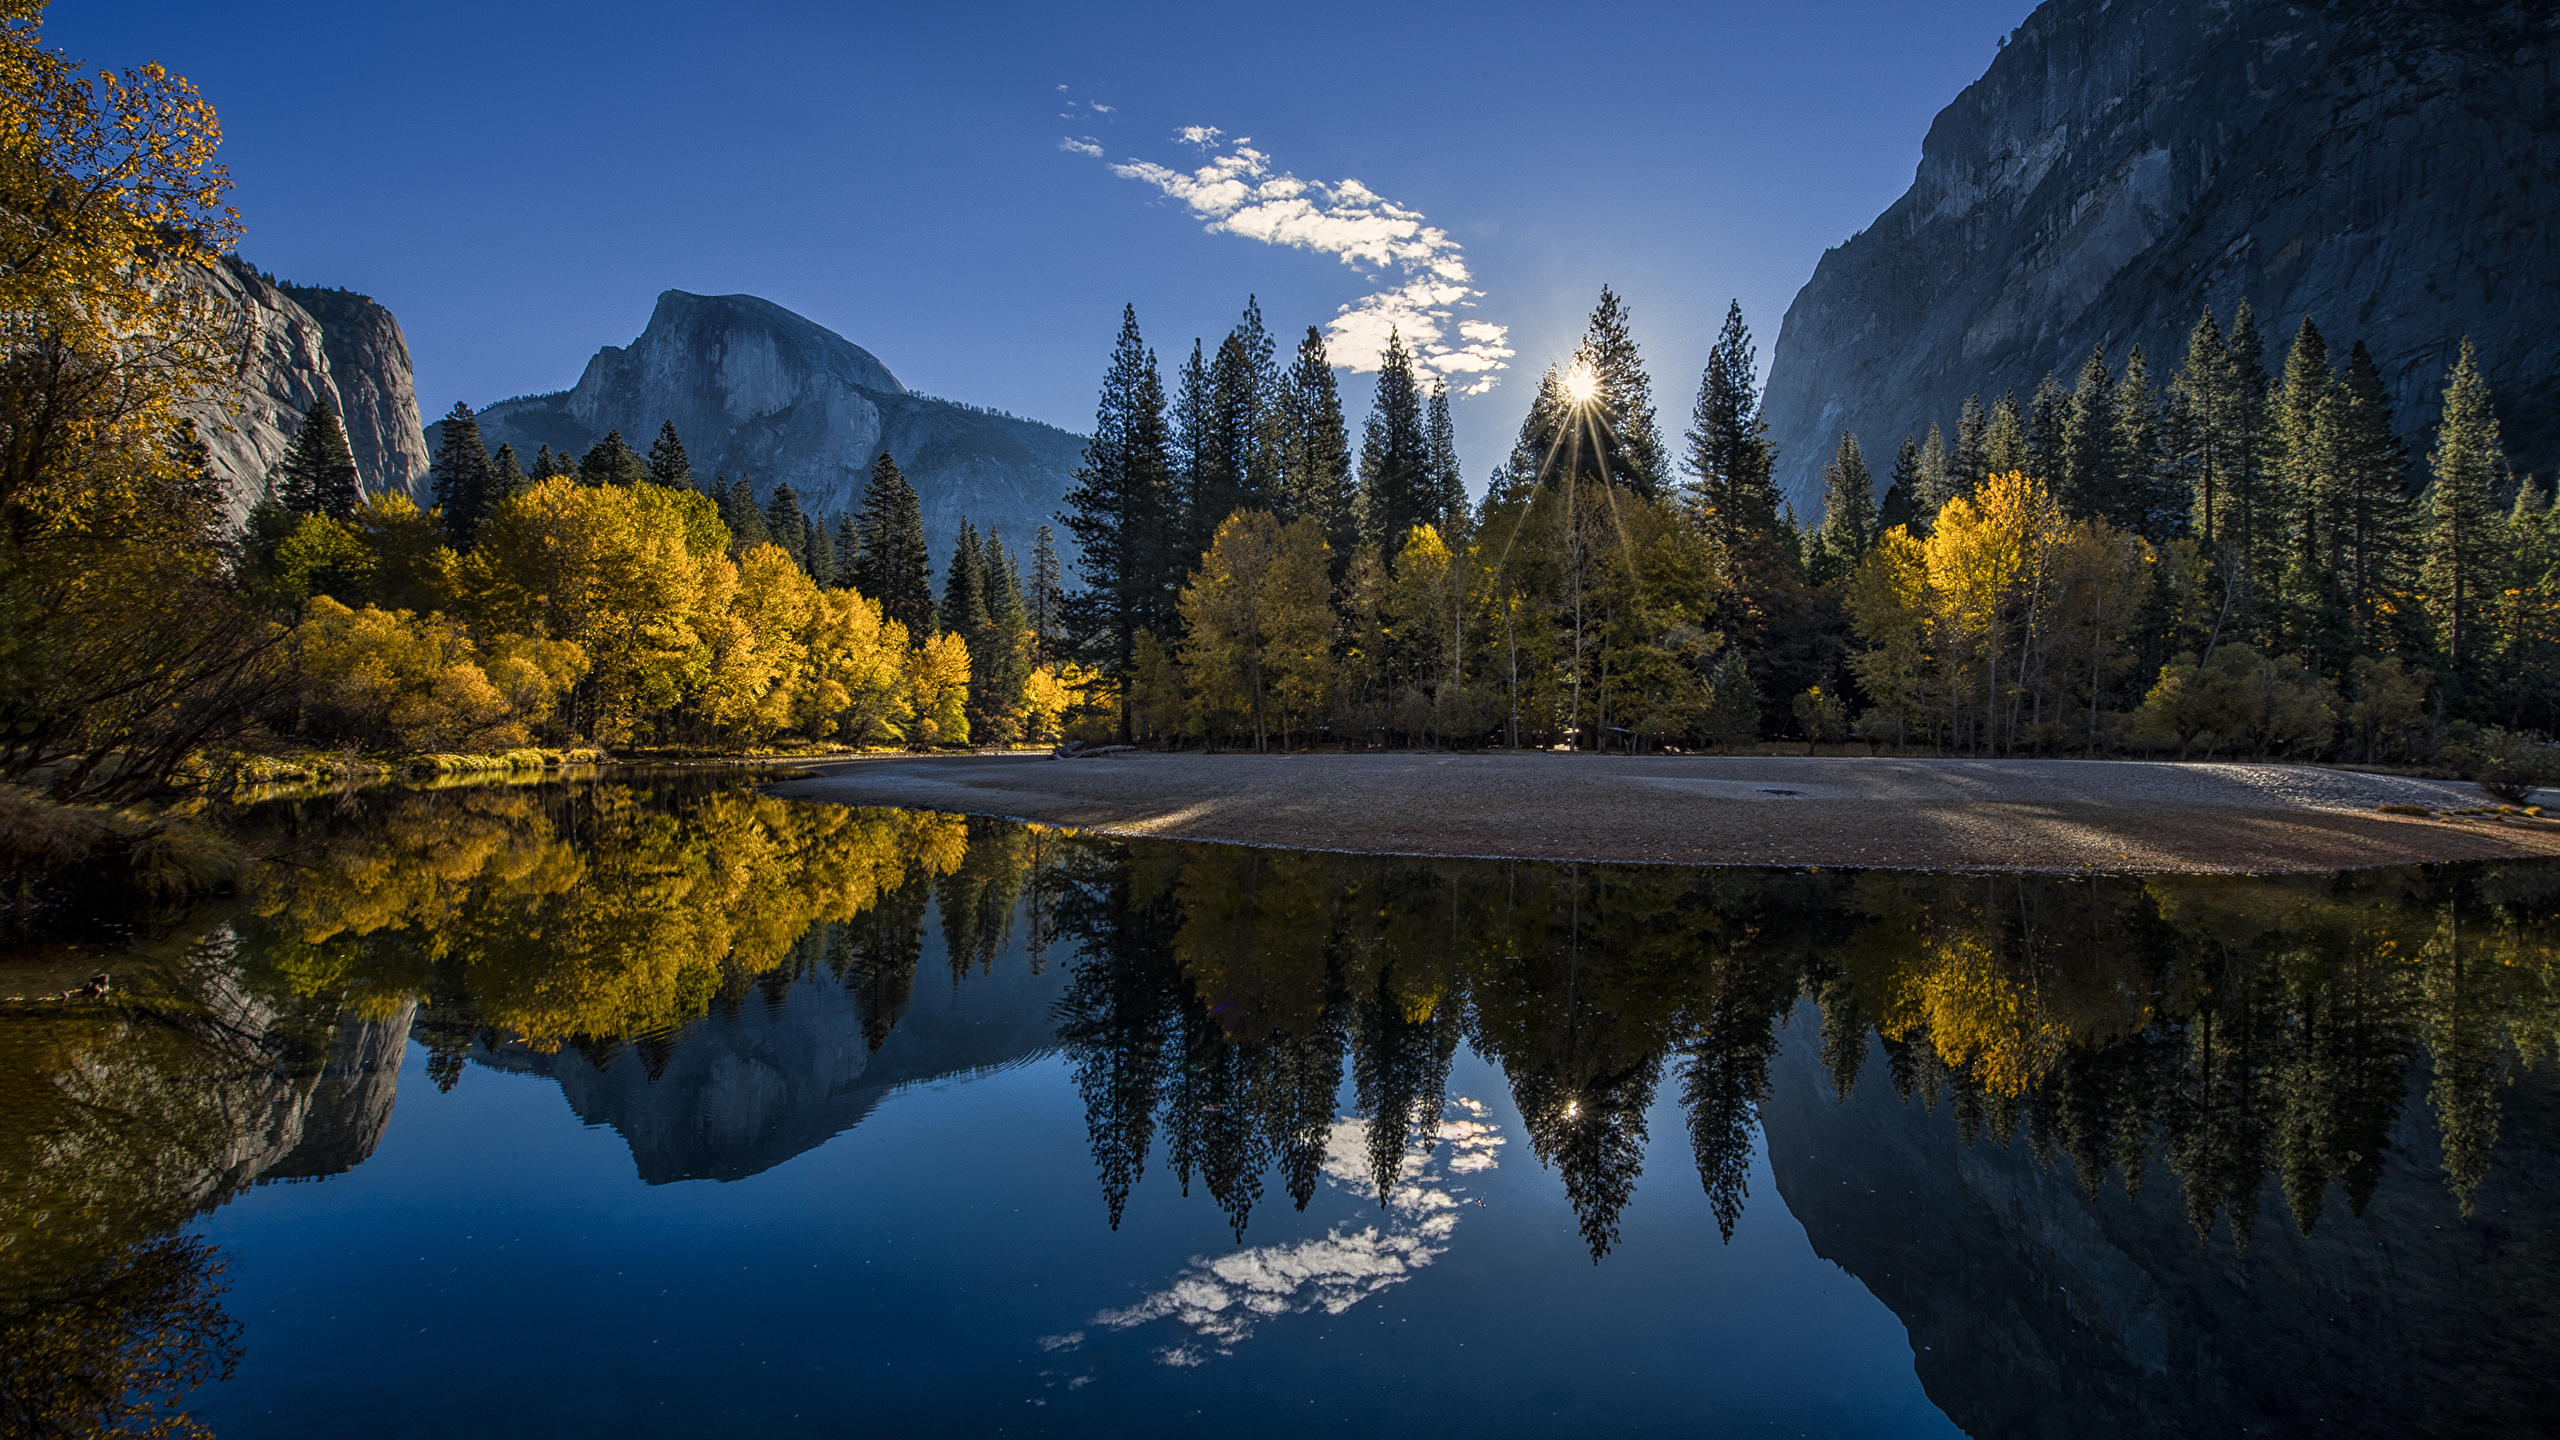 Fonds d'ecran 2560x1440 Parc USA Photographie de paysage Yosemite